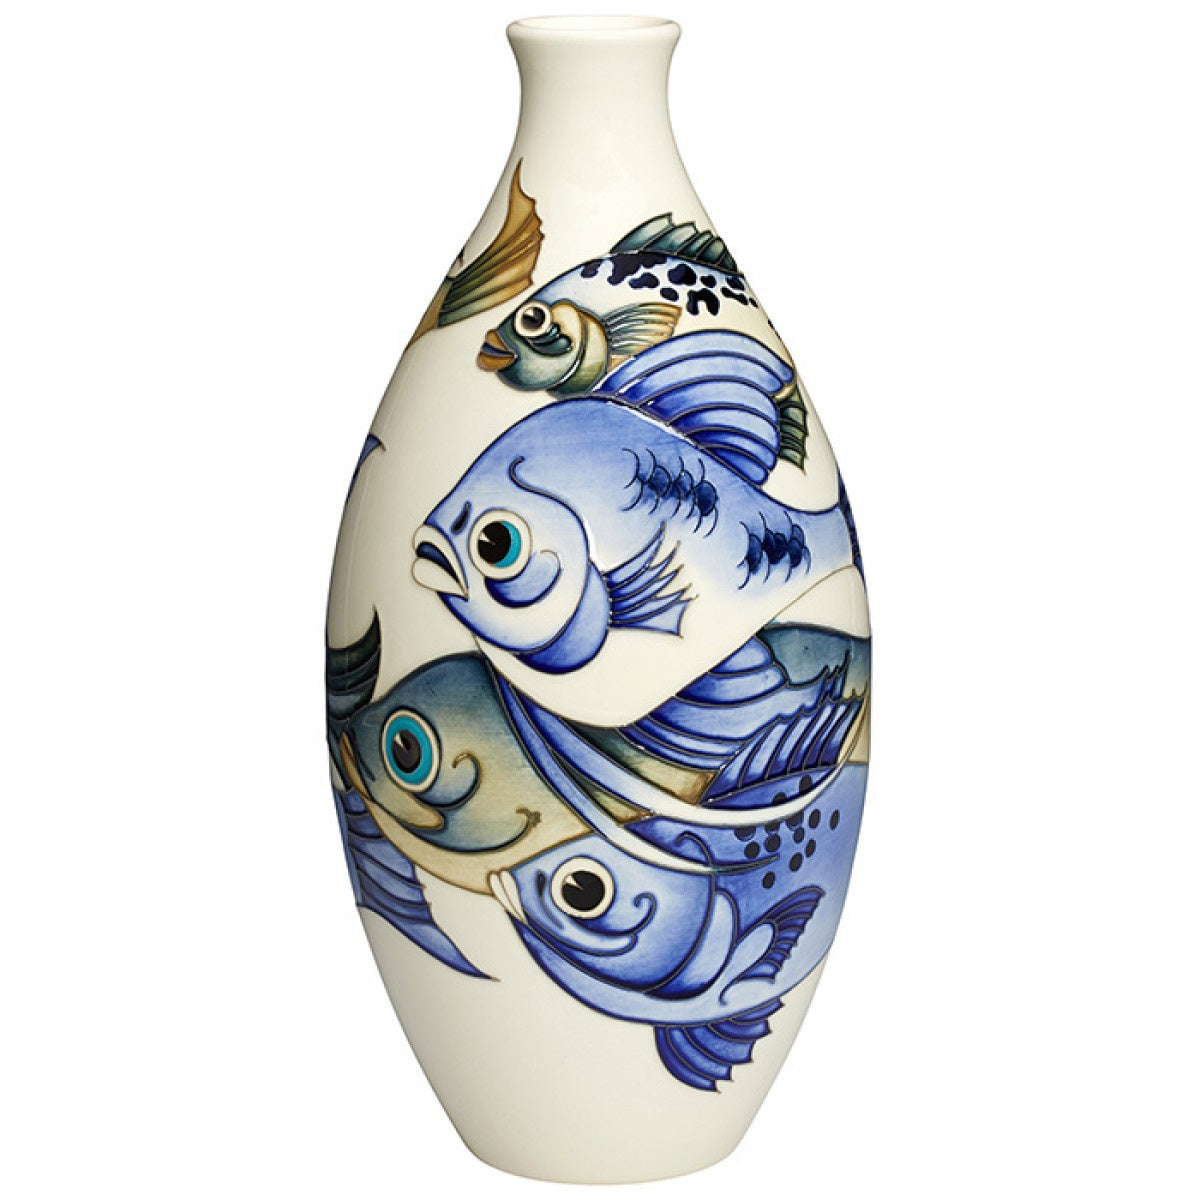 Shoaling Vase 9/12 Limited Edition